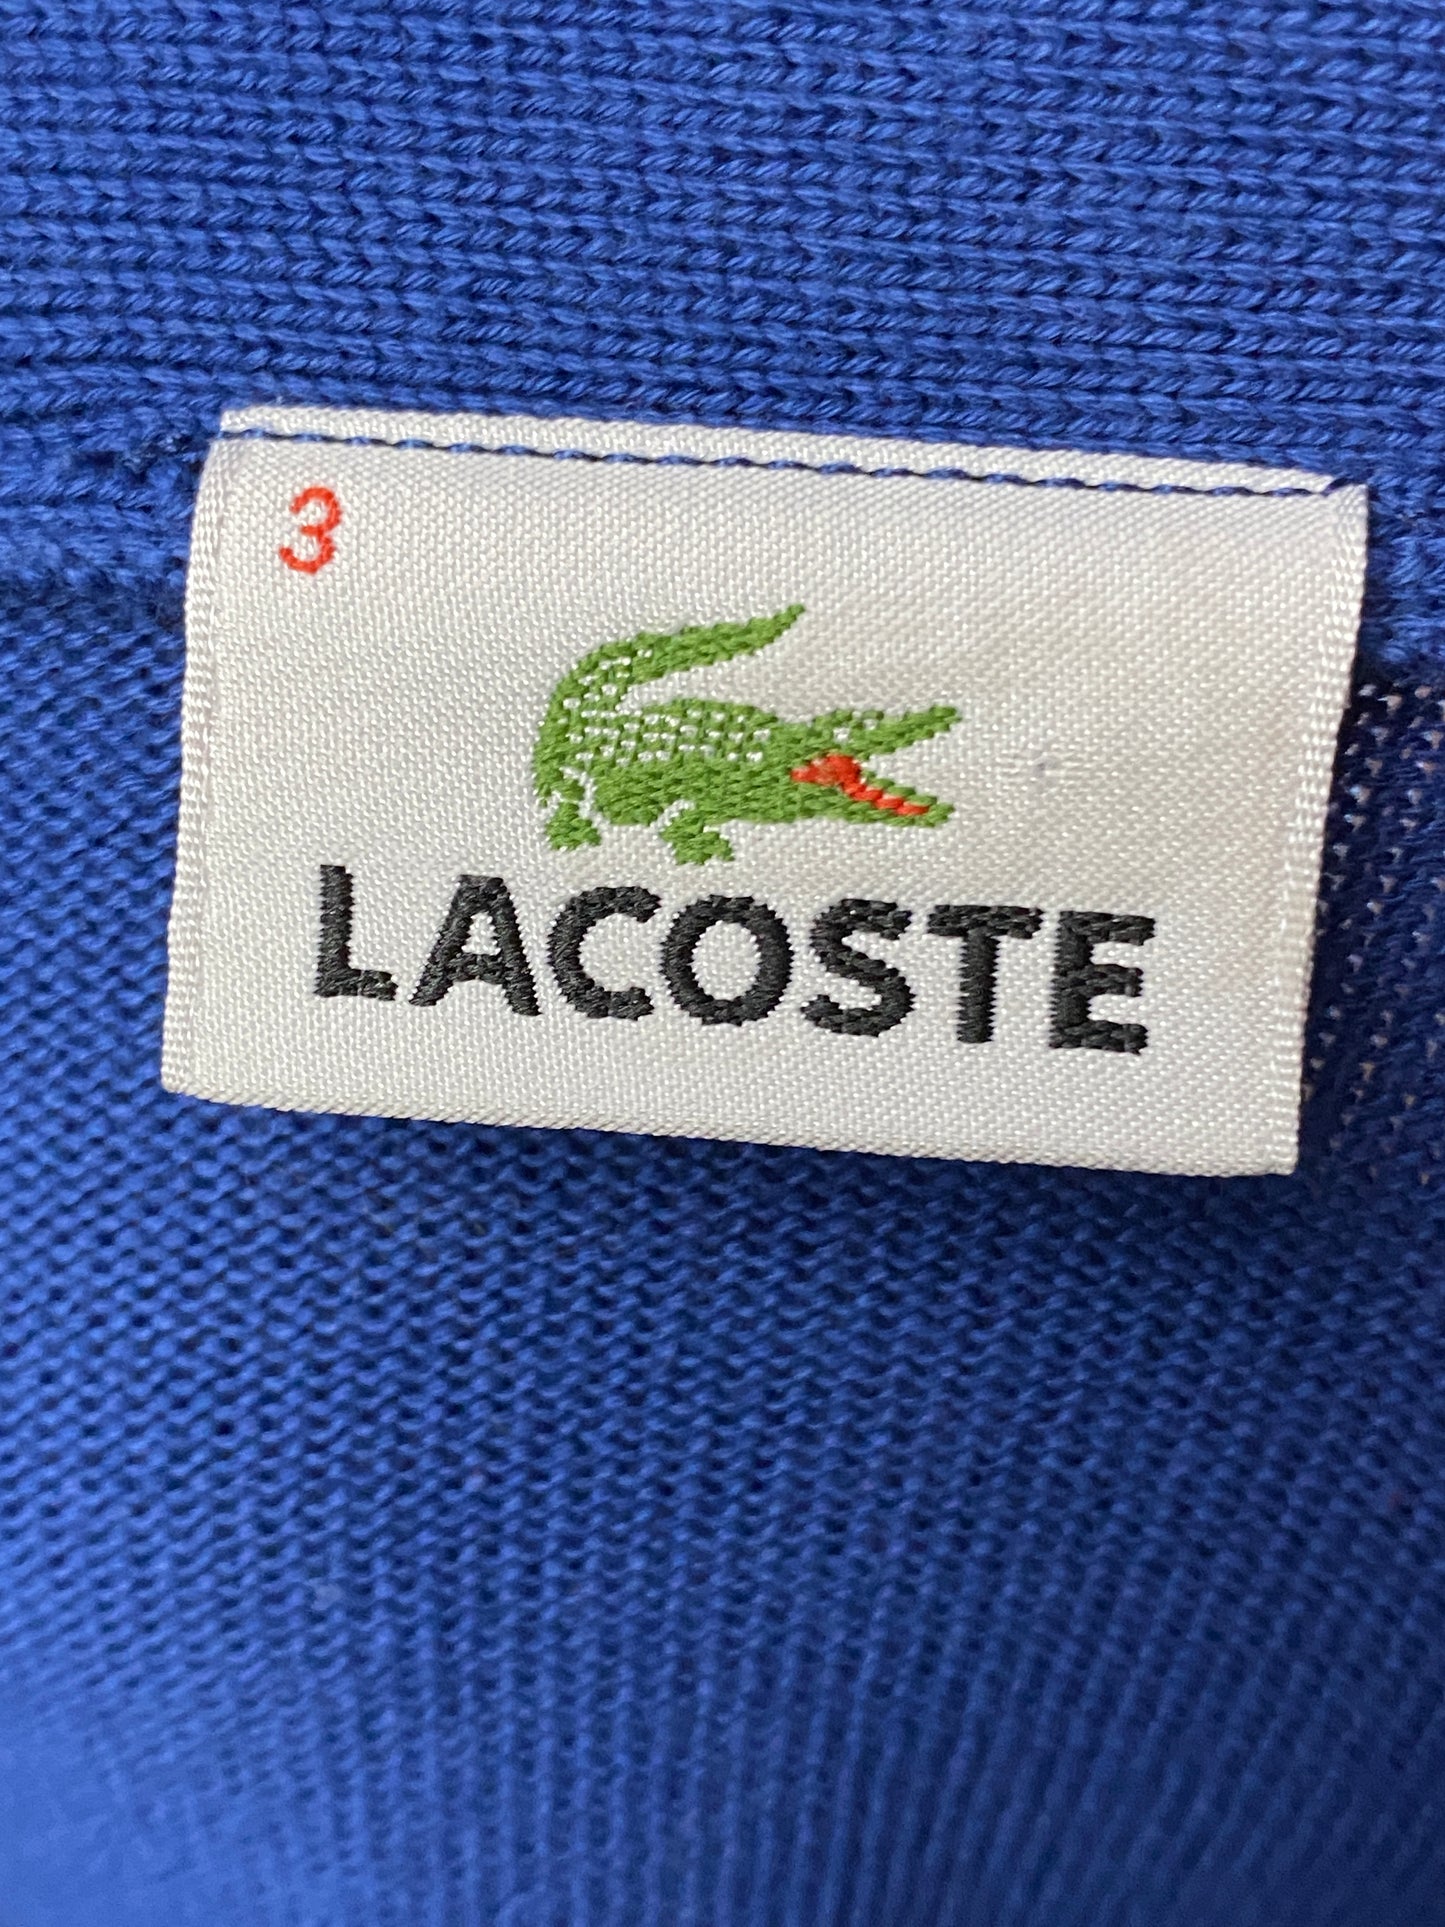 Lacoste Vintage Men's Cardigan - XS Blue Cotton